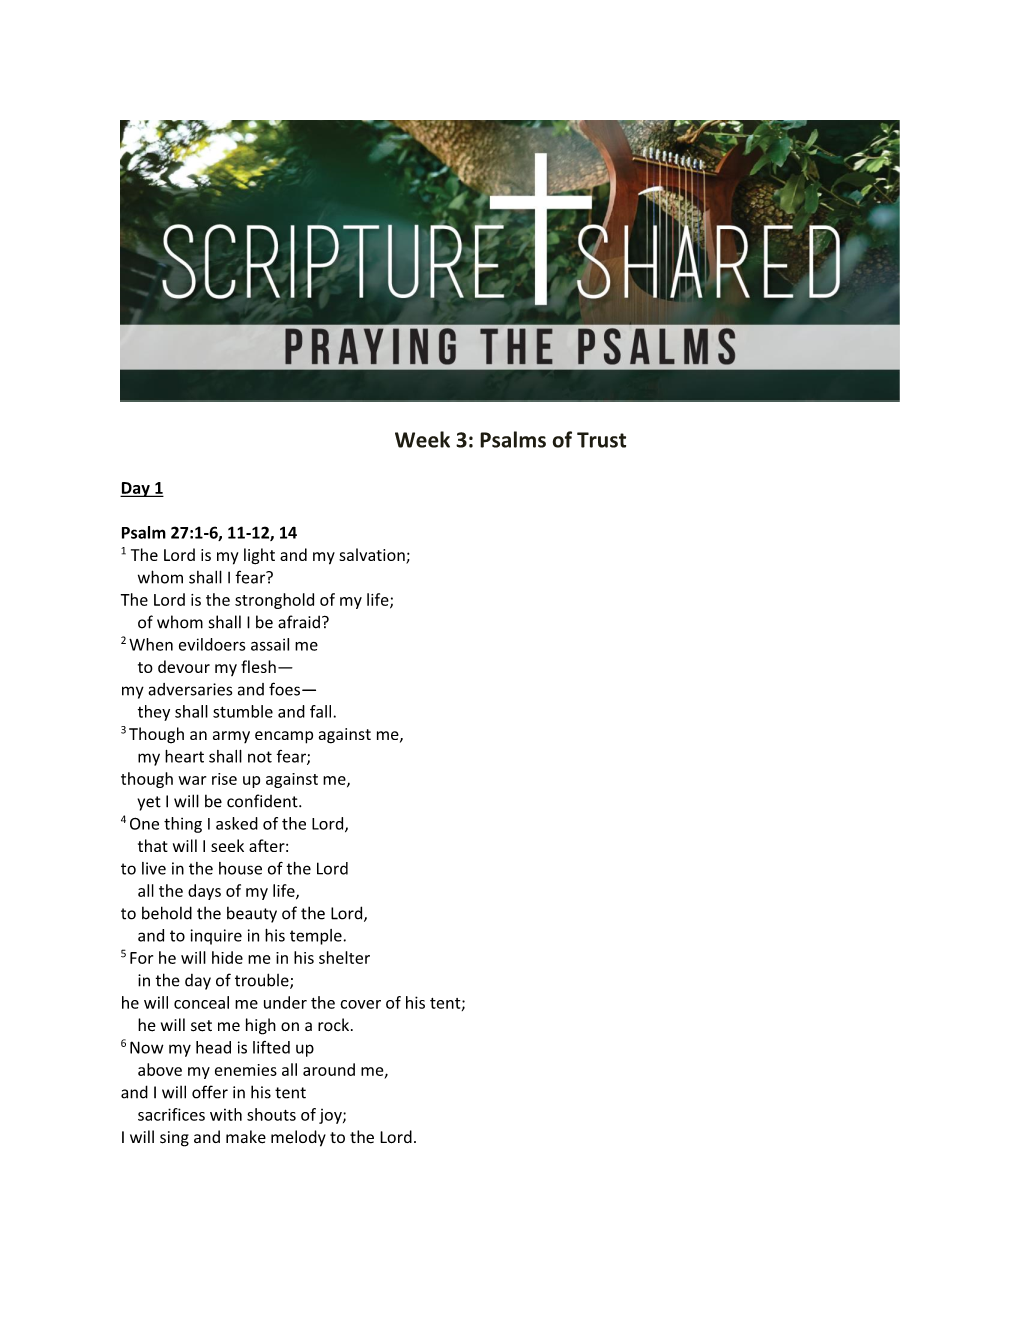 Week 3: Psalms of Trust